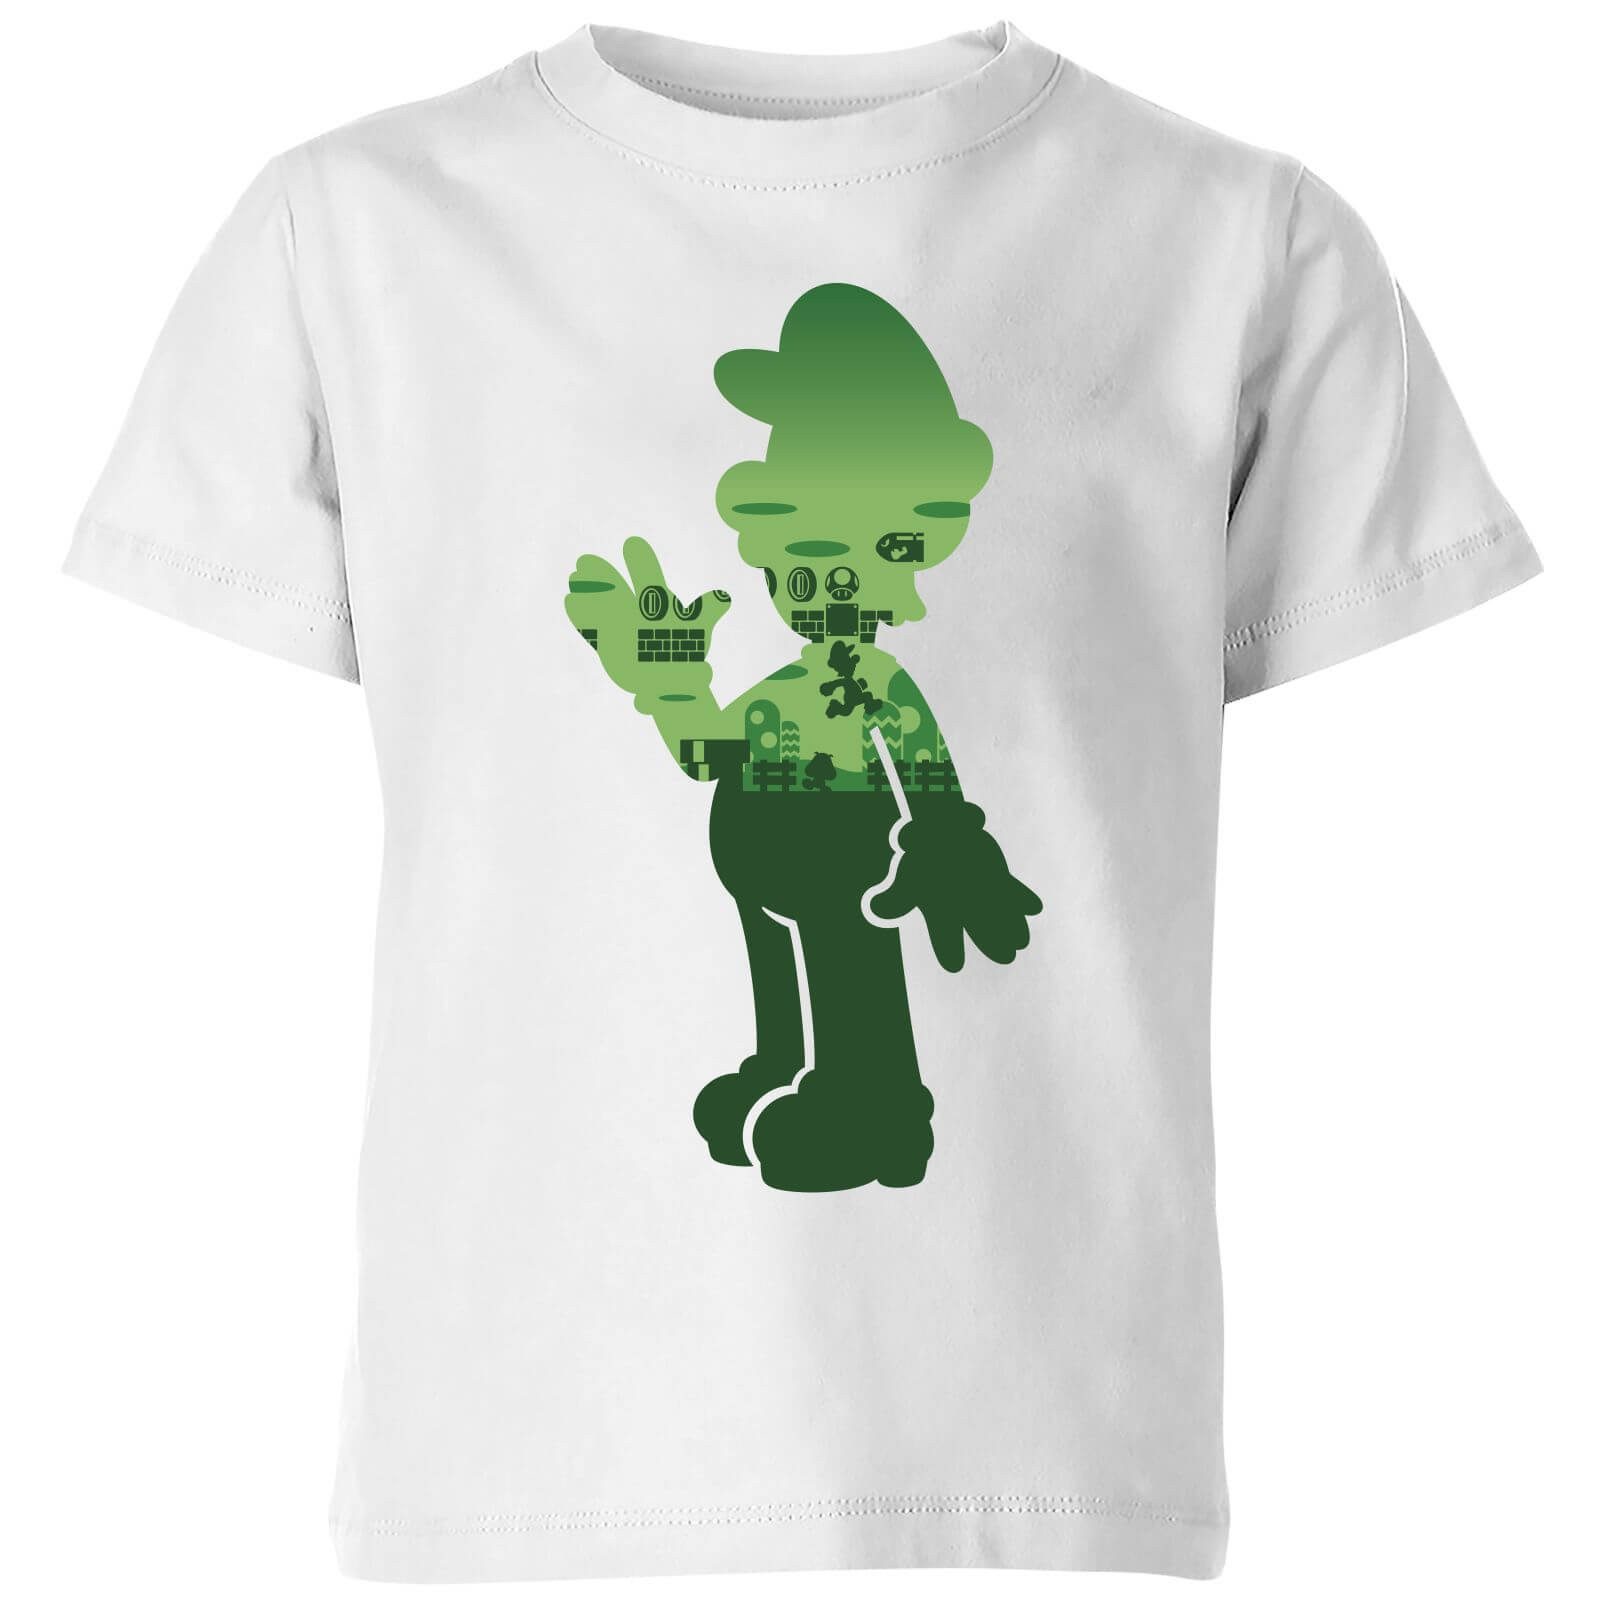 Nintendo Super Mario Luigi Silhouette Kids' T-Shirt - White - 11-12 Years